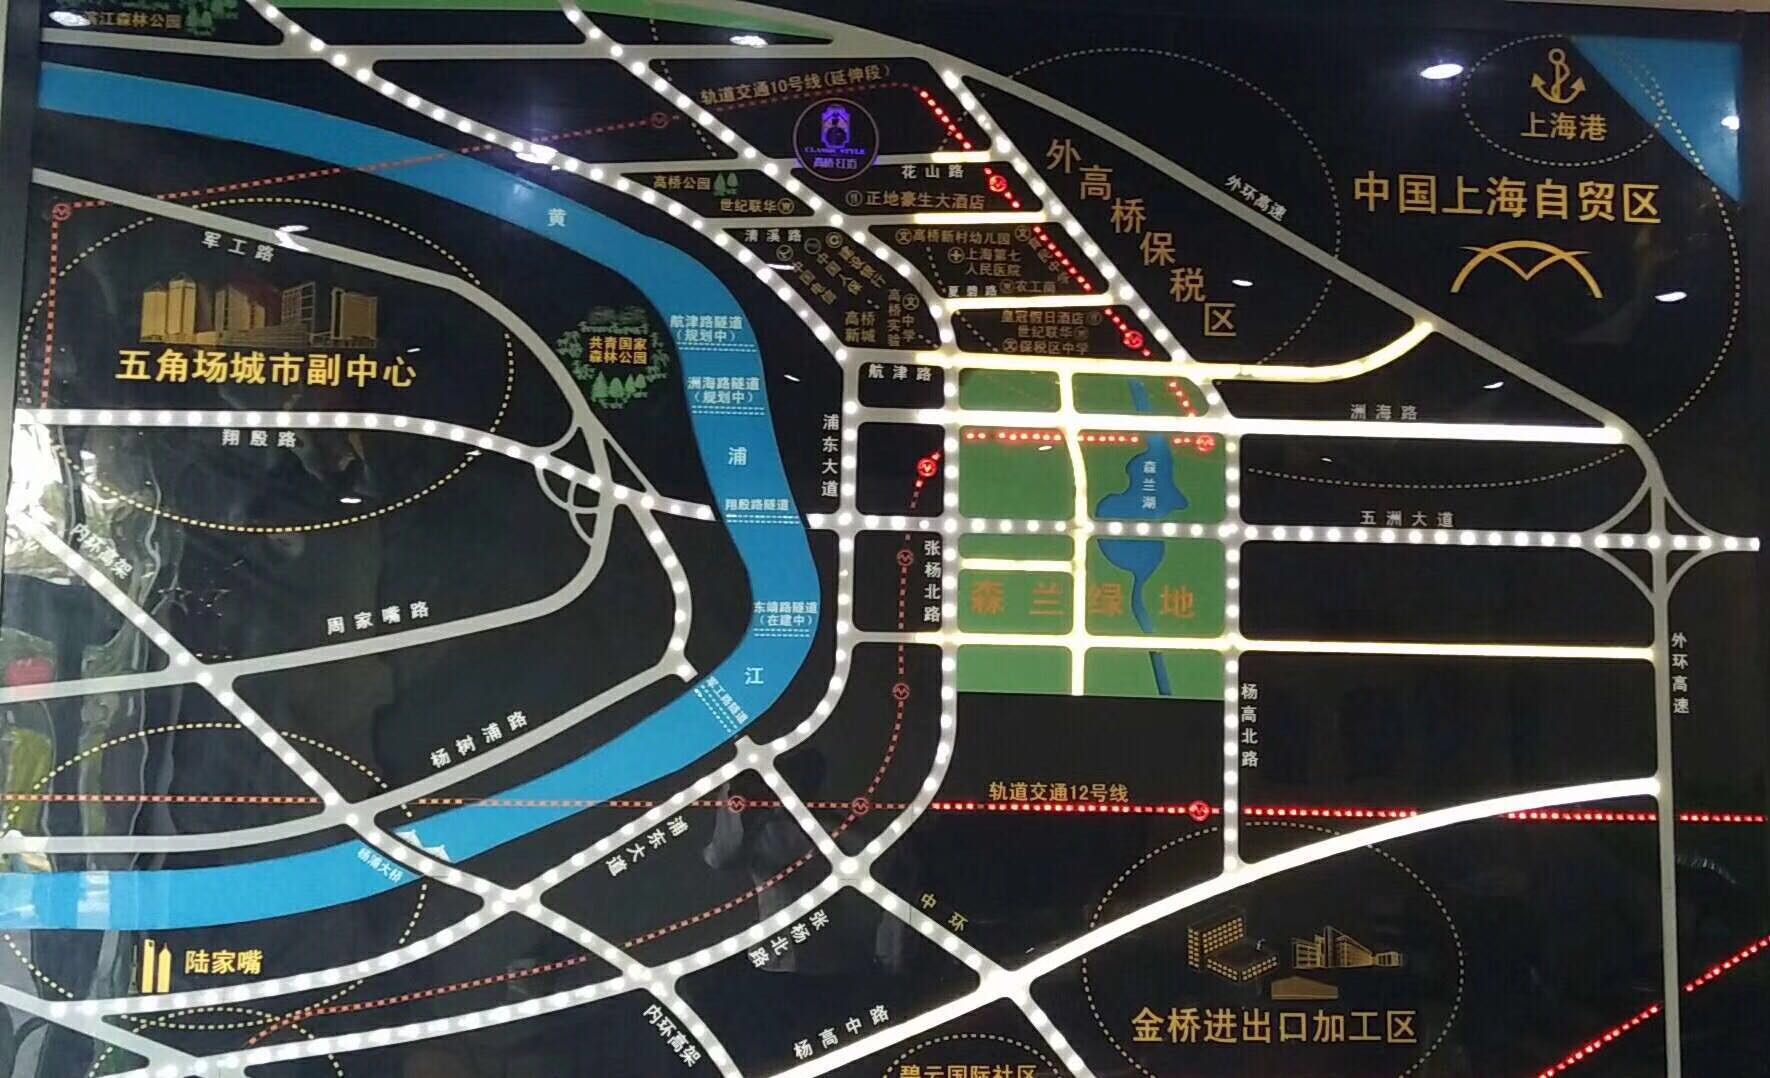 【上海市高桥红坊楼盘】房价,户型,开盘时间详情 区位